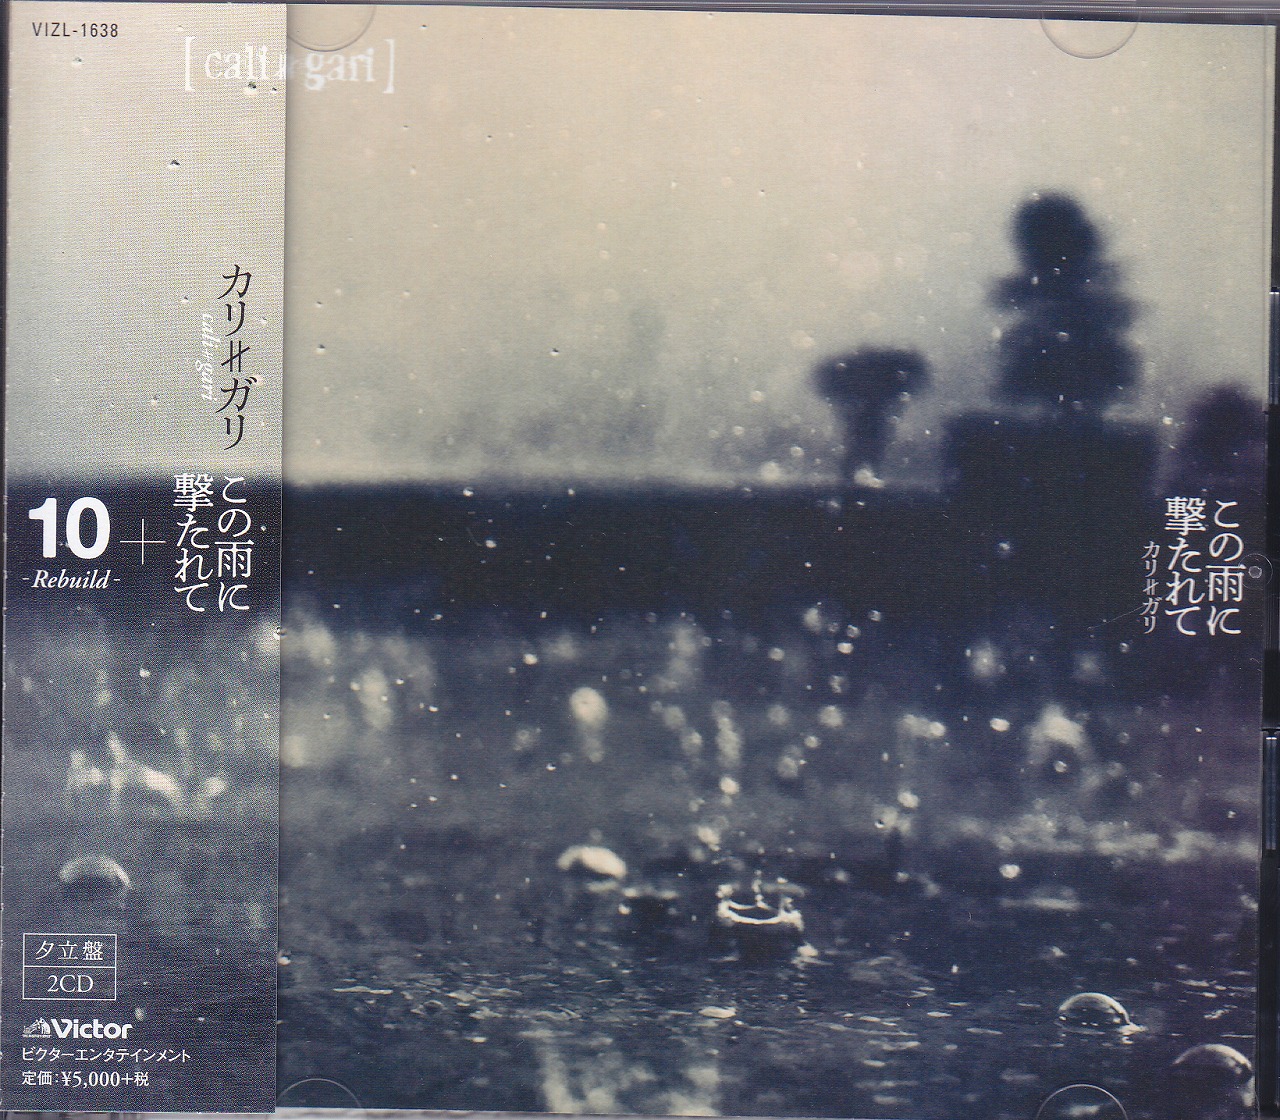 カリガリ の CD 【夕立盤】この雨に撃たれて